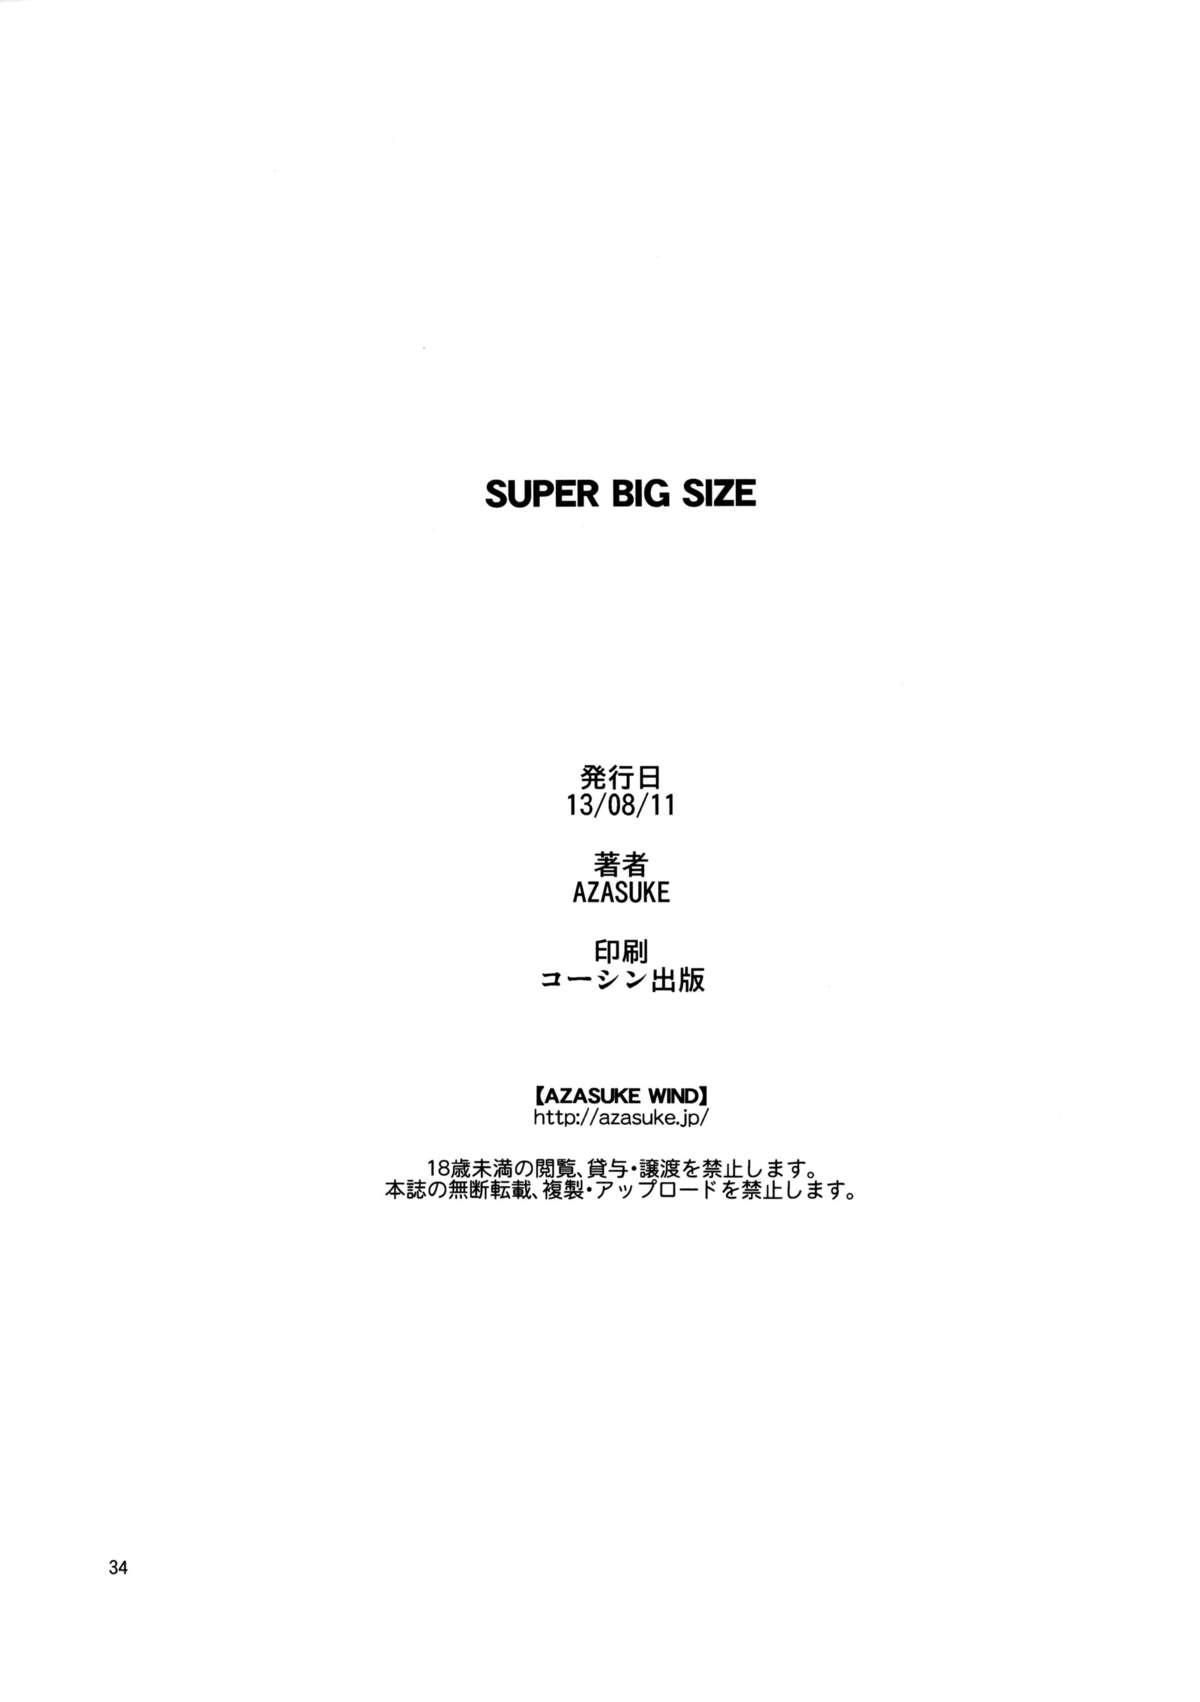 SUPER BIG SIZE! 32